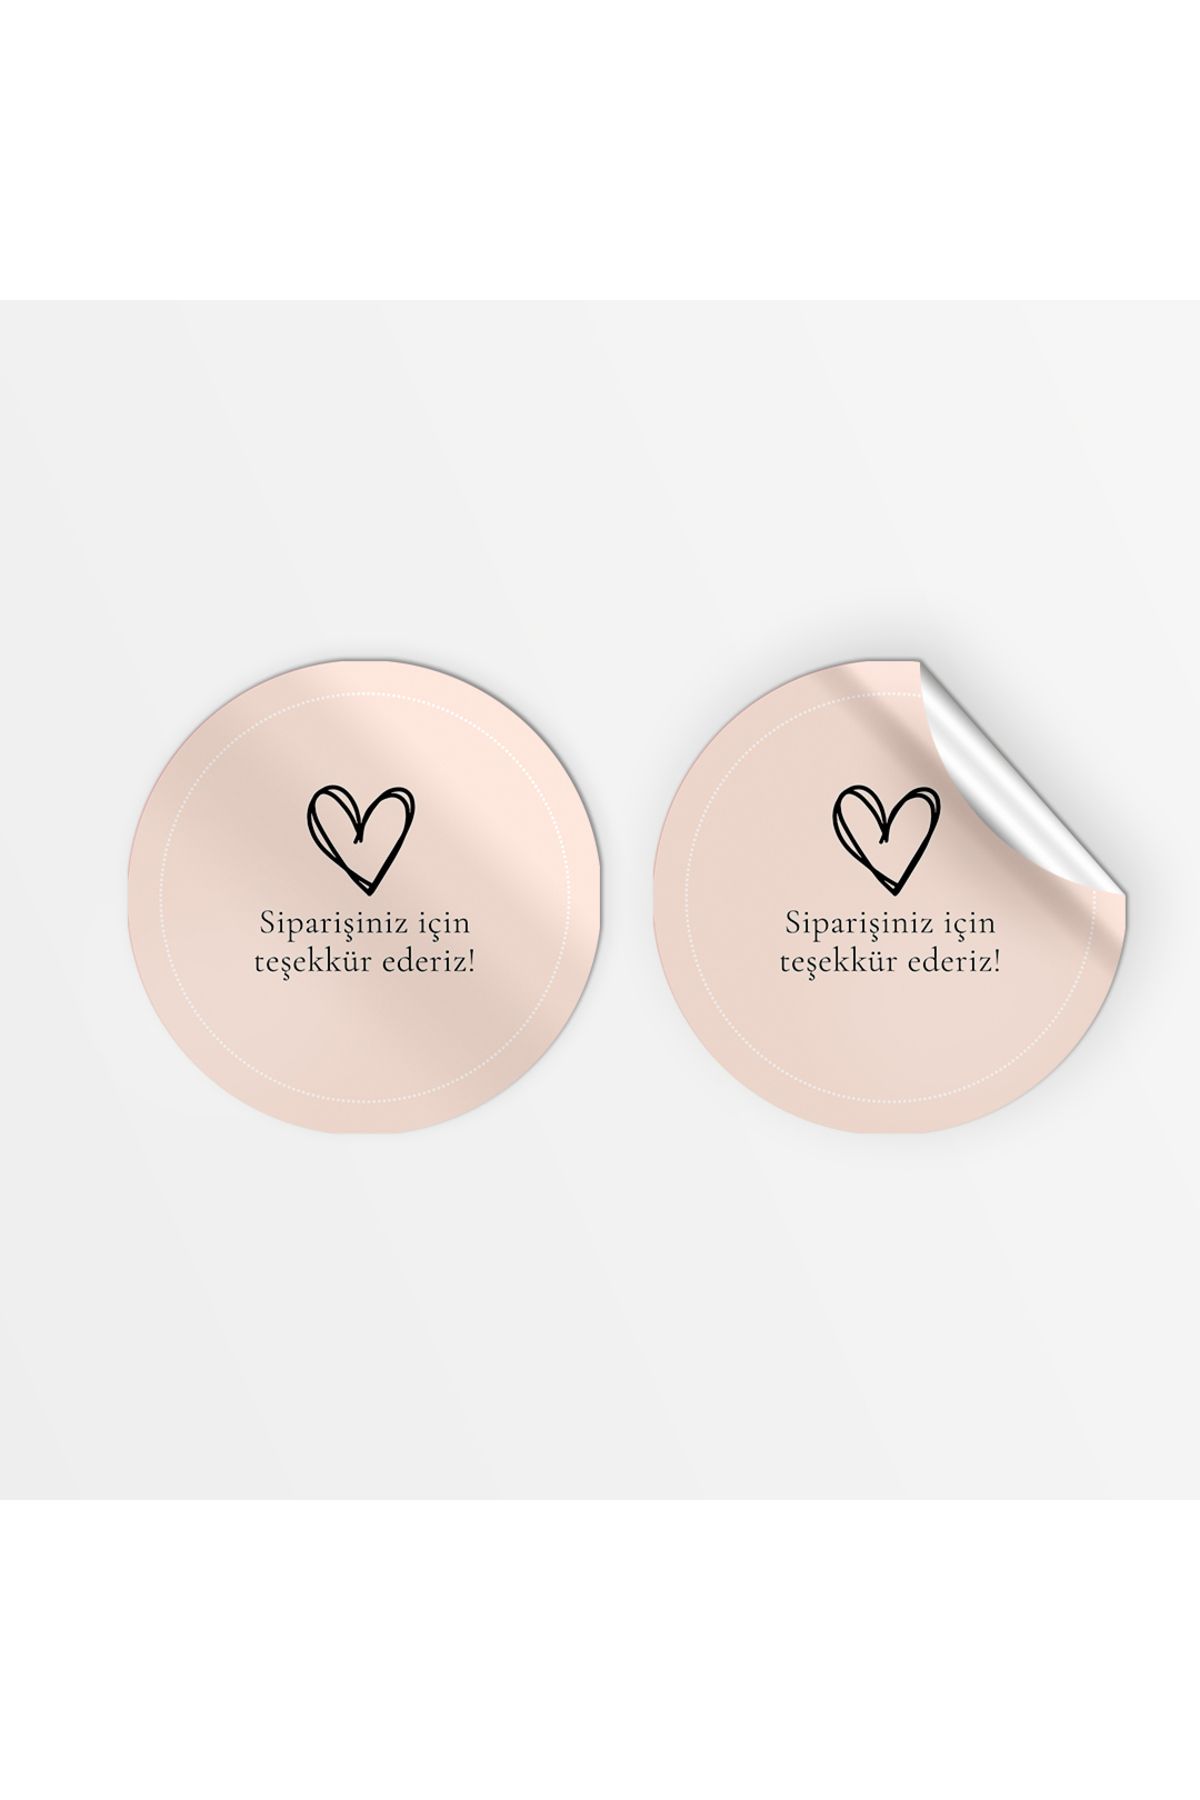 Pink Butik Kuşe Sticker Paketleme & Kargo Etiketi (4x4cm) 70 Adet - Siparişiniz için teşekkürler / 2 -